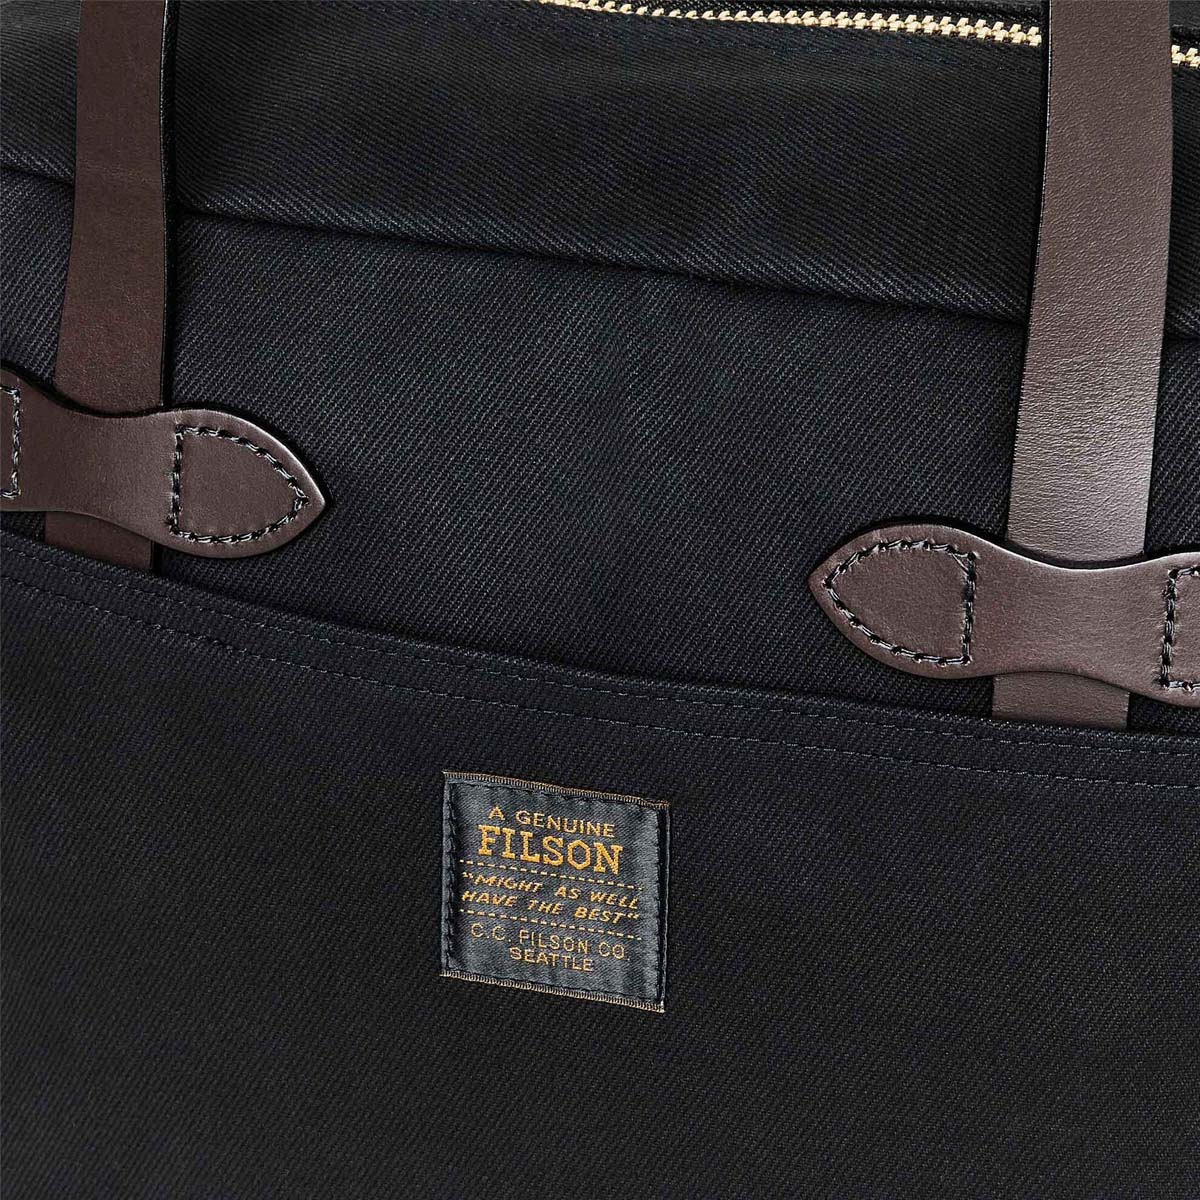 Filson Rugged Twill Tote Bag With Zipper Black, gemaakt voor mannen en vrouwen die van gemak, stijl en kwaliteit houden